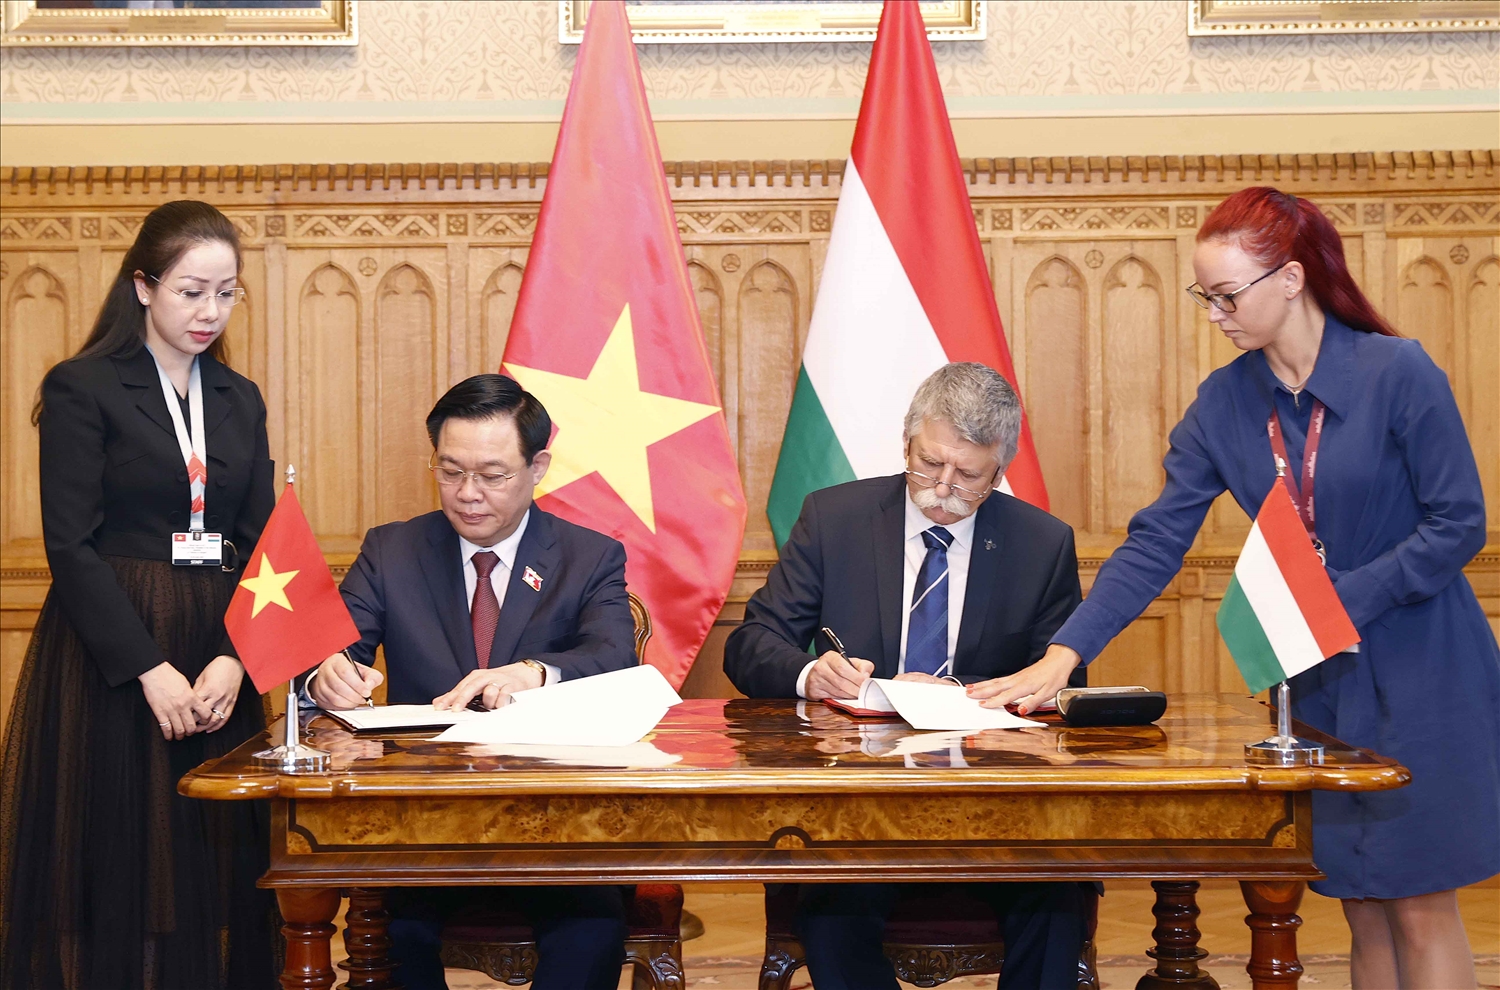 Chủ tịch Quốc hội Vương Đình Huệ và Chủ tịch Quốc hội Hungary László Kövér ký Thoả thuận hợp tác mới giữa Quốc hội Việt Nam và Quốc hội Hungary